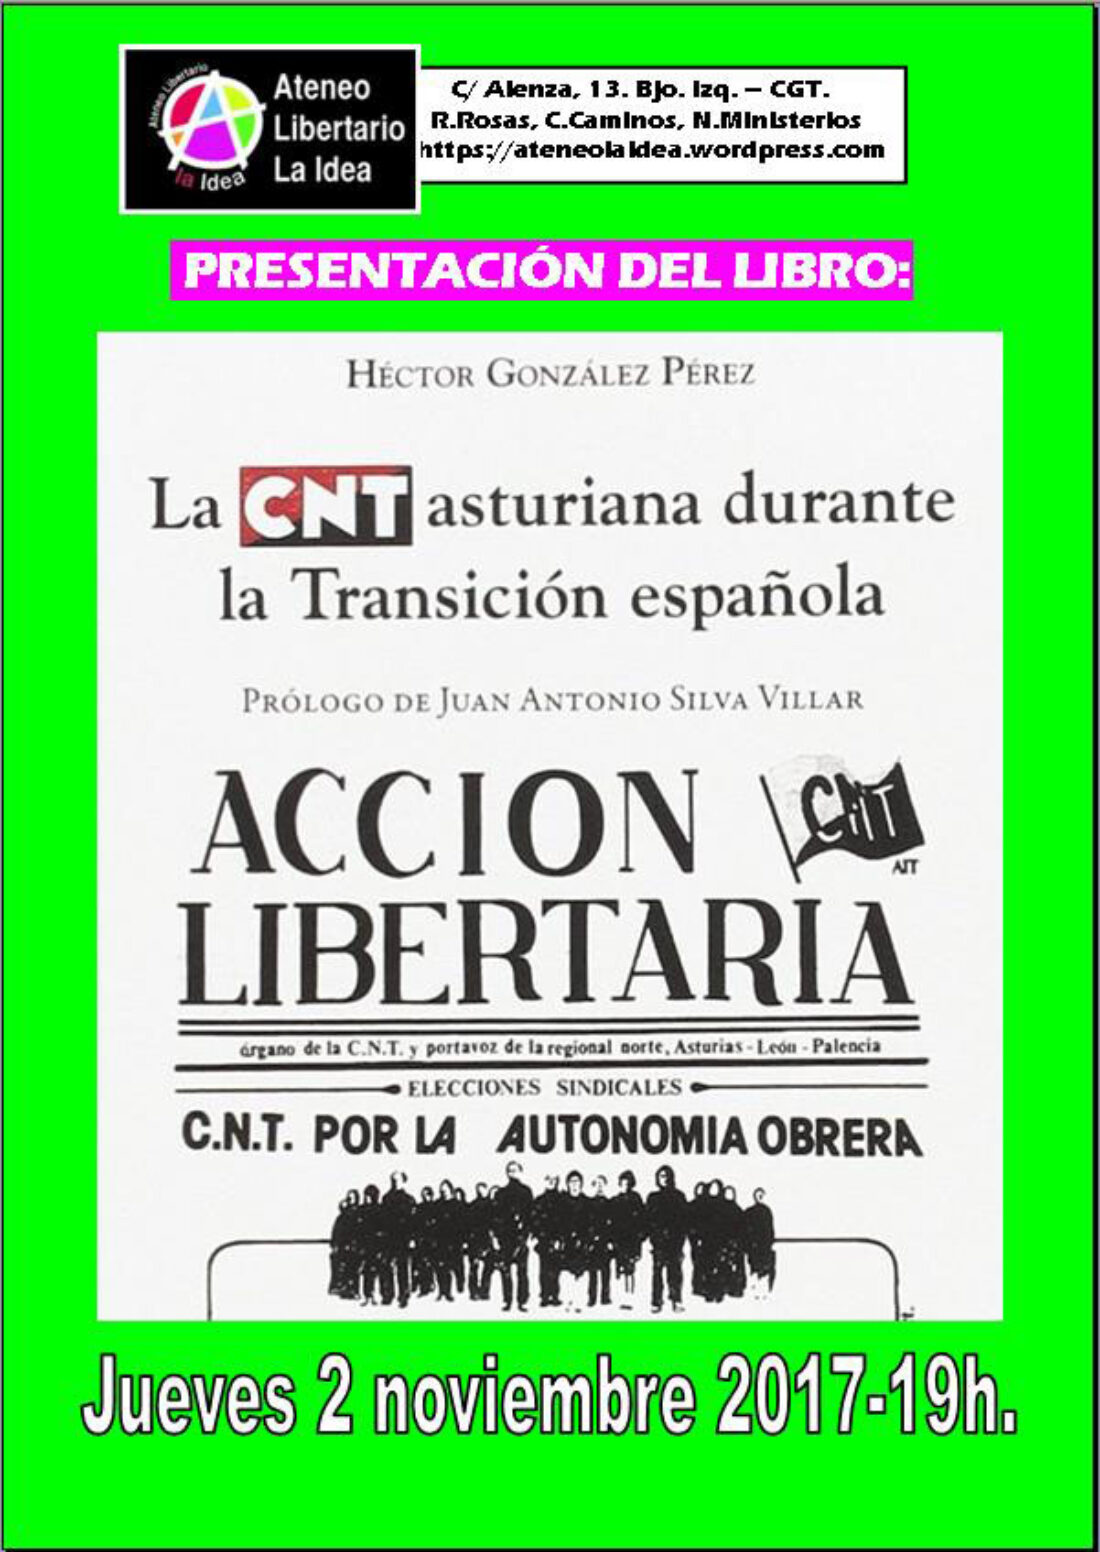 Presentación del libro «La CNT asturiana durante la Transición española» en el Ateneo Libertario La Idea